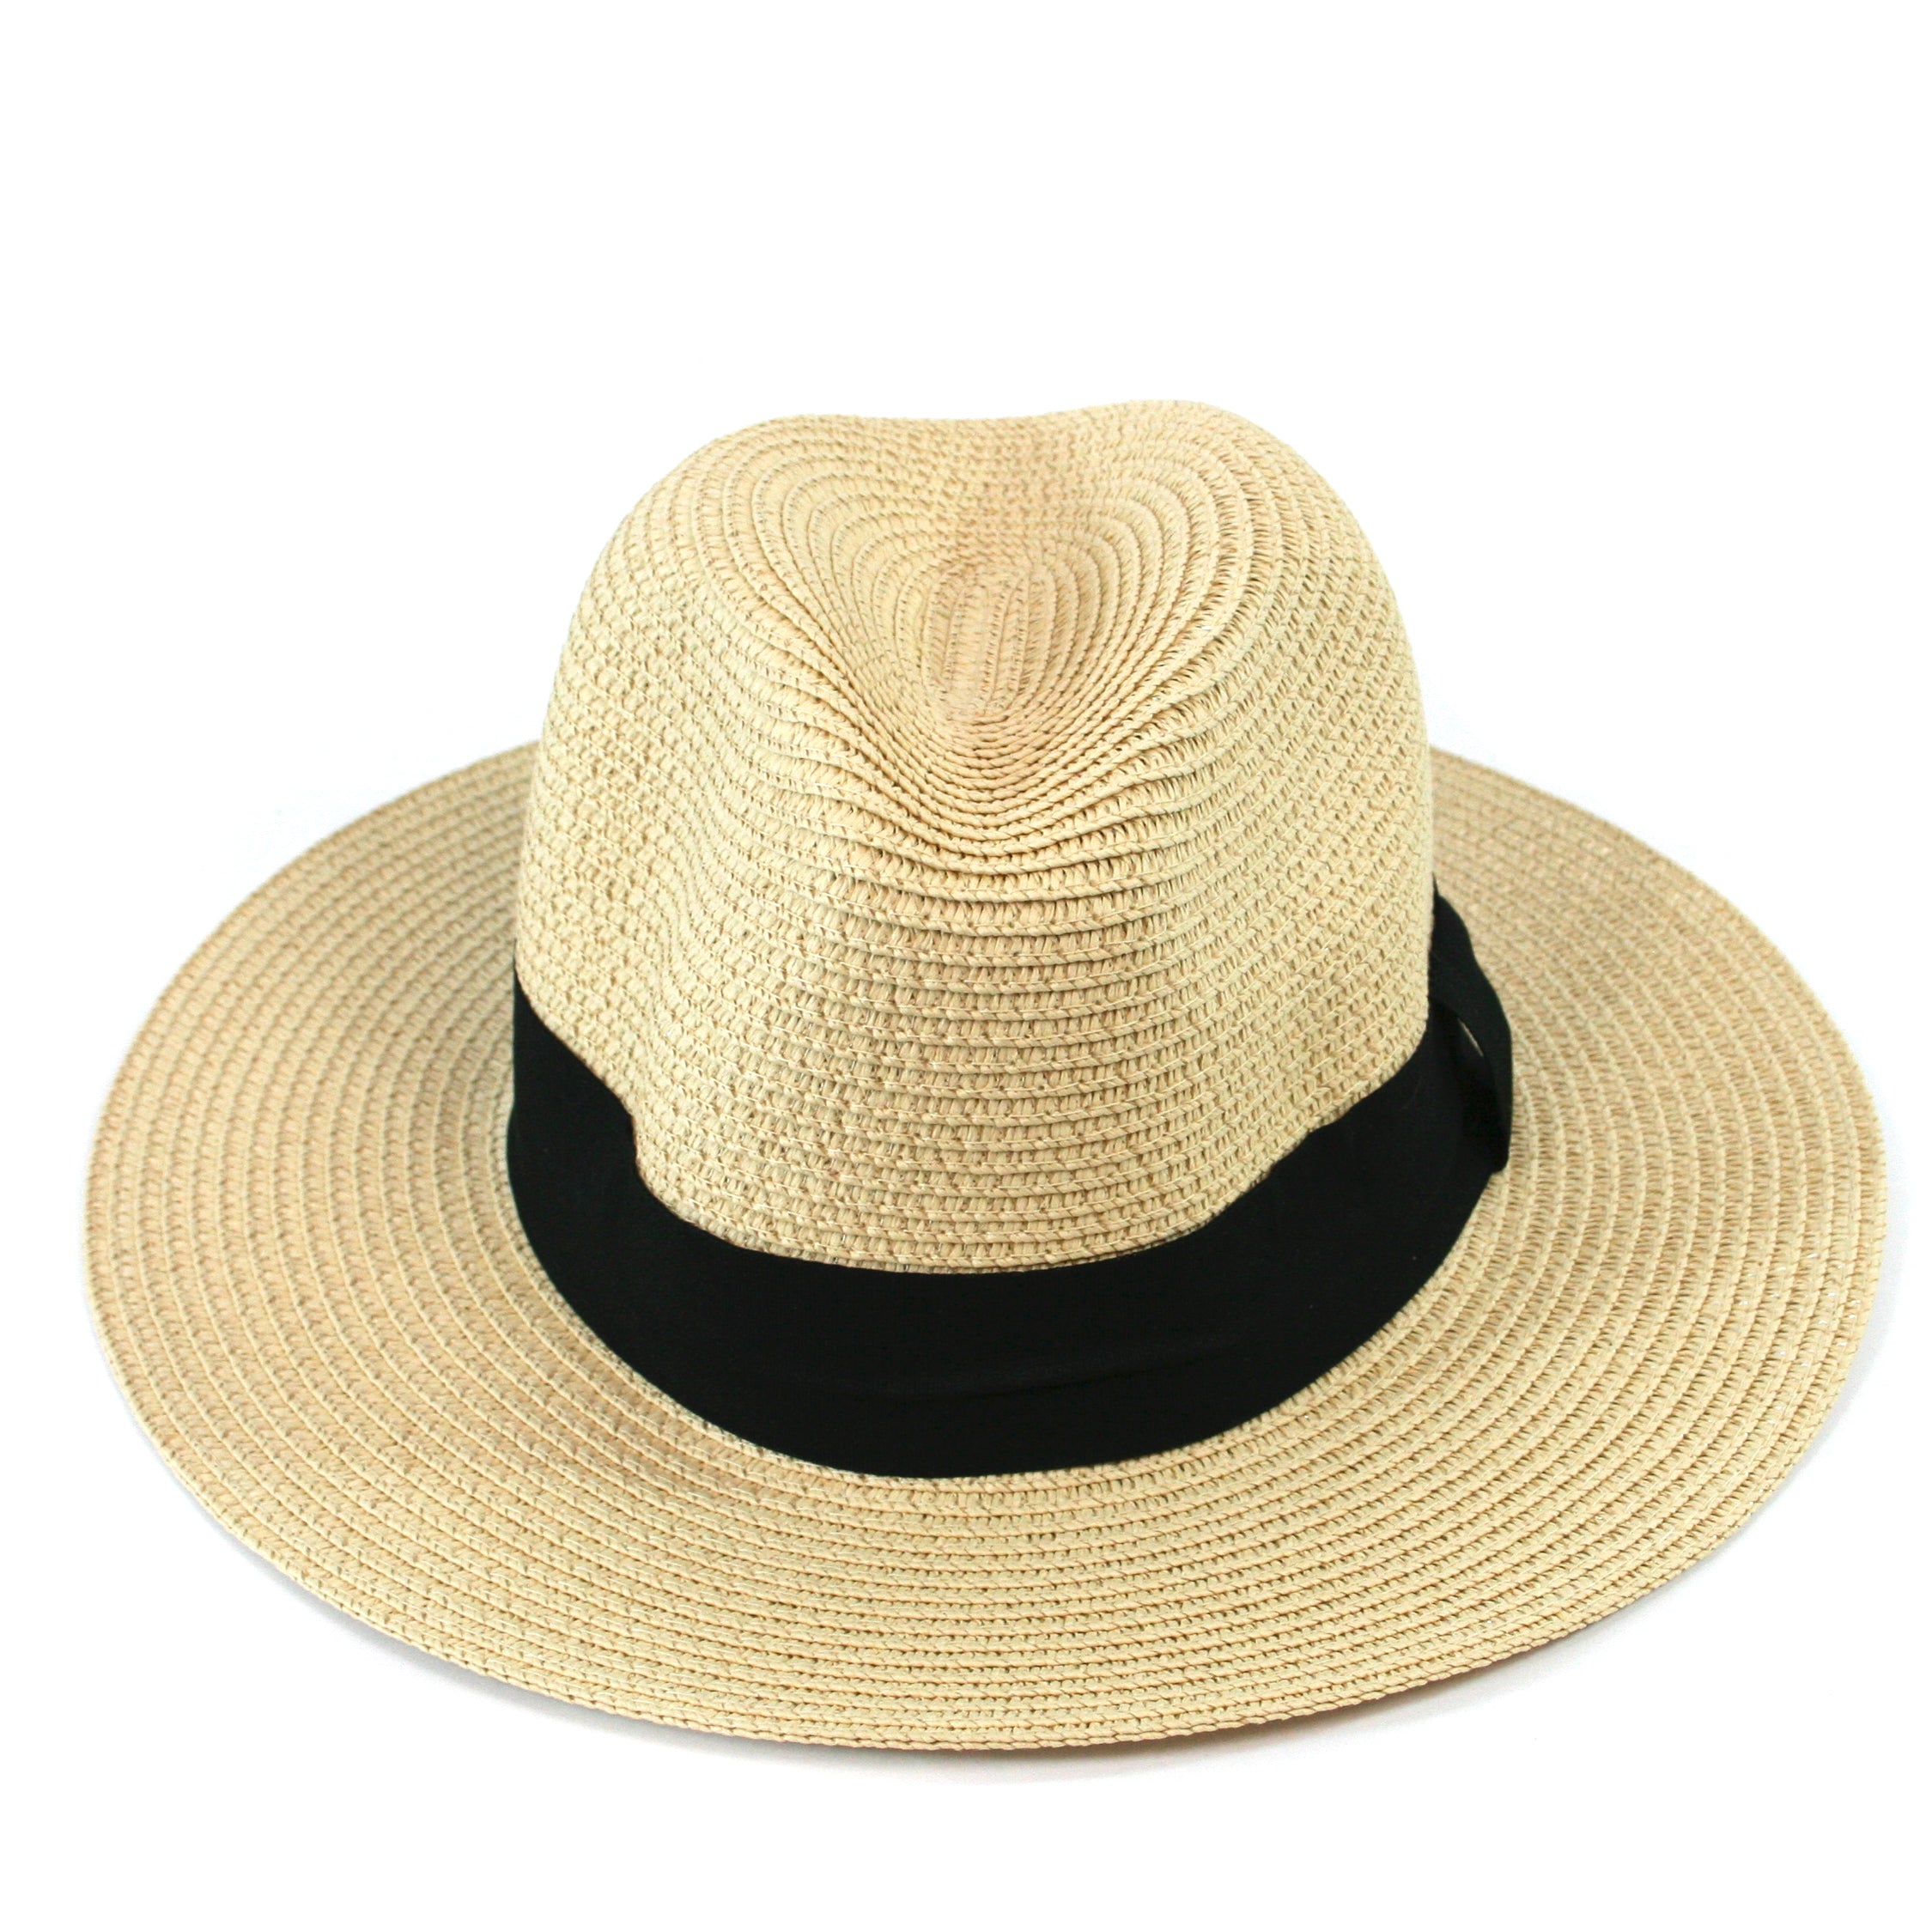 Chapeau de soleil pliable style Panama dans un sac - Grand (59 cm)